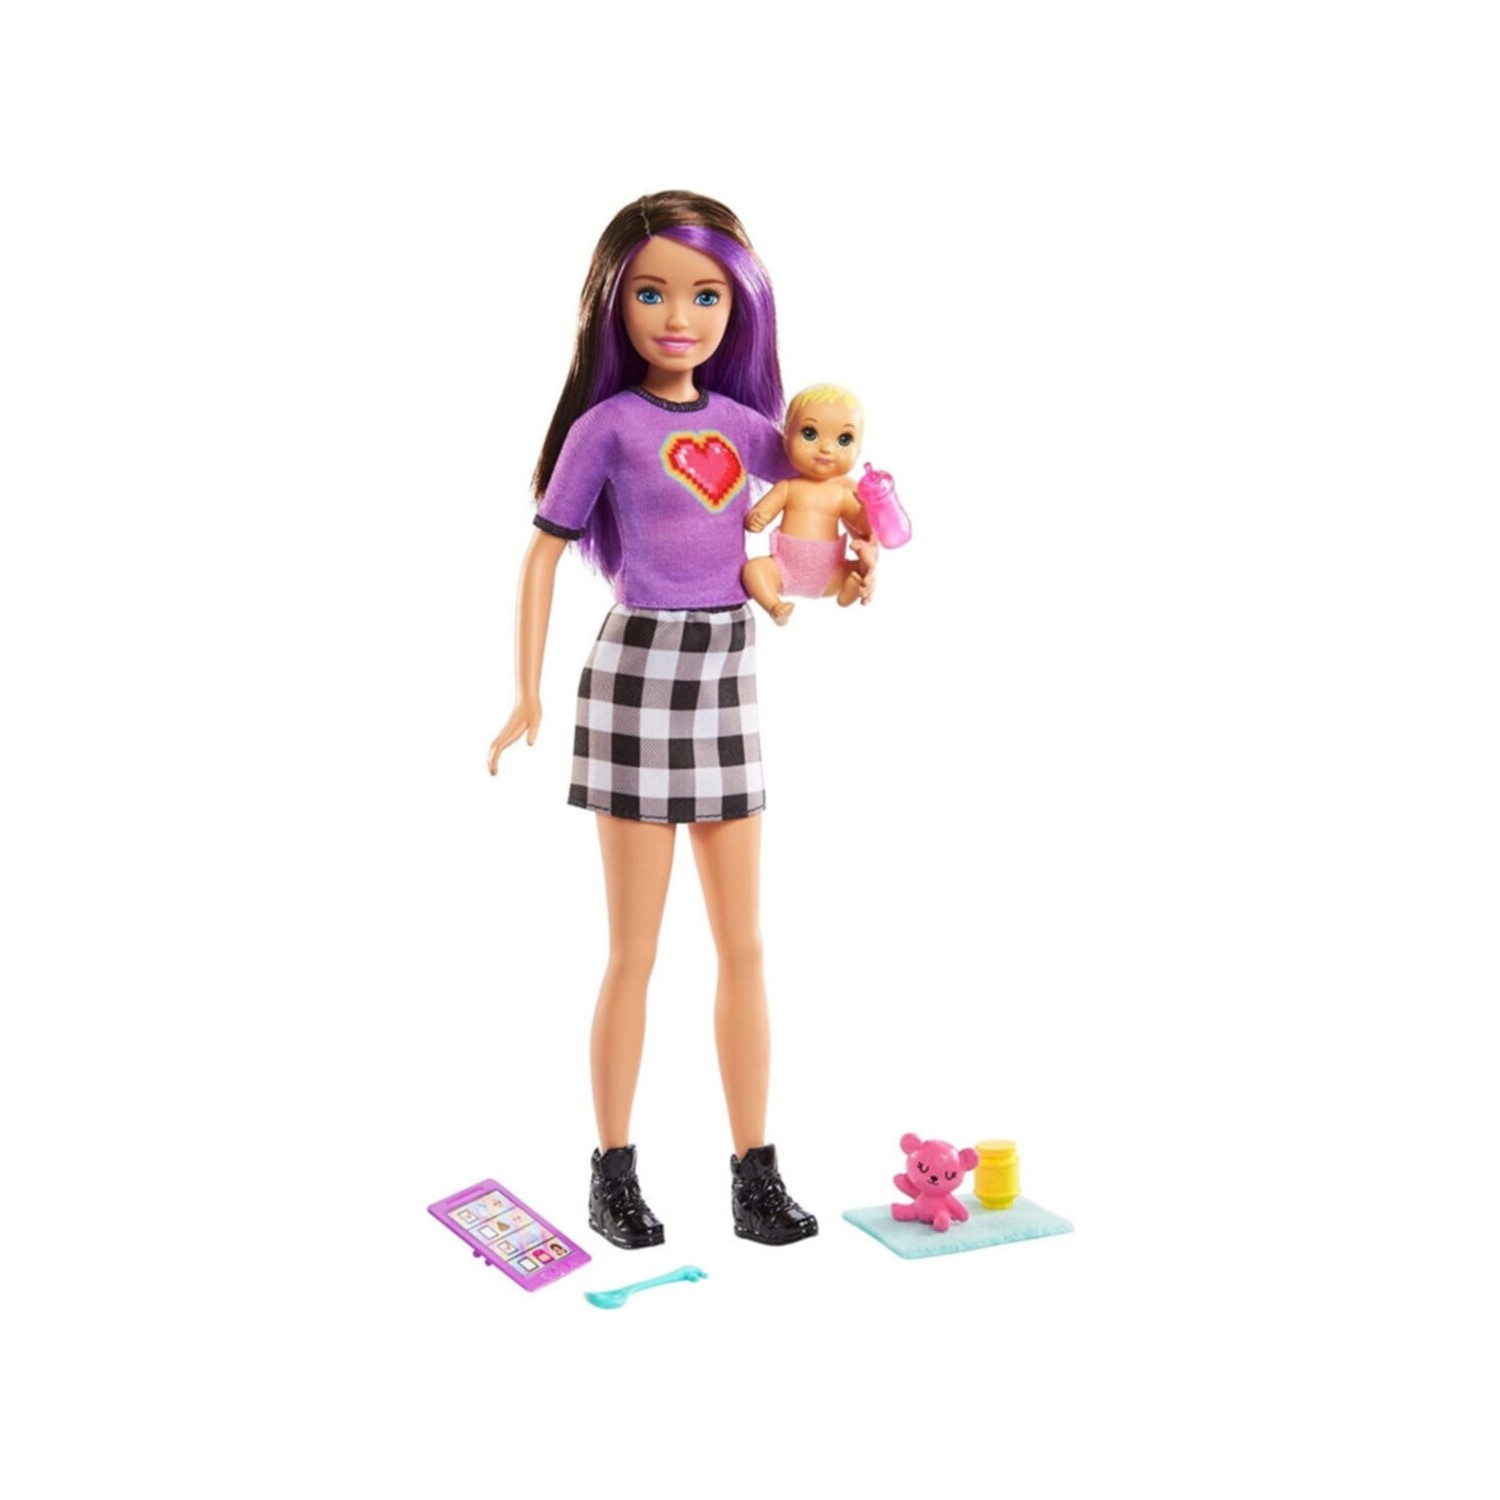 Игровой набор Barbie Skipper Babysitters набор игровой barbie малибу с аксессуарами gyg39